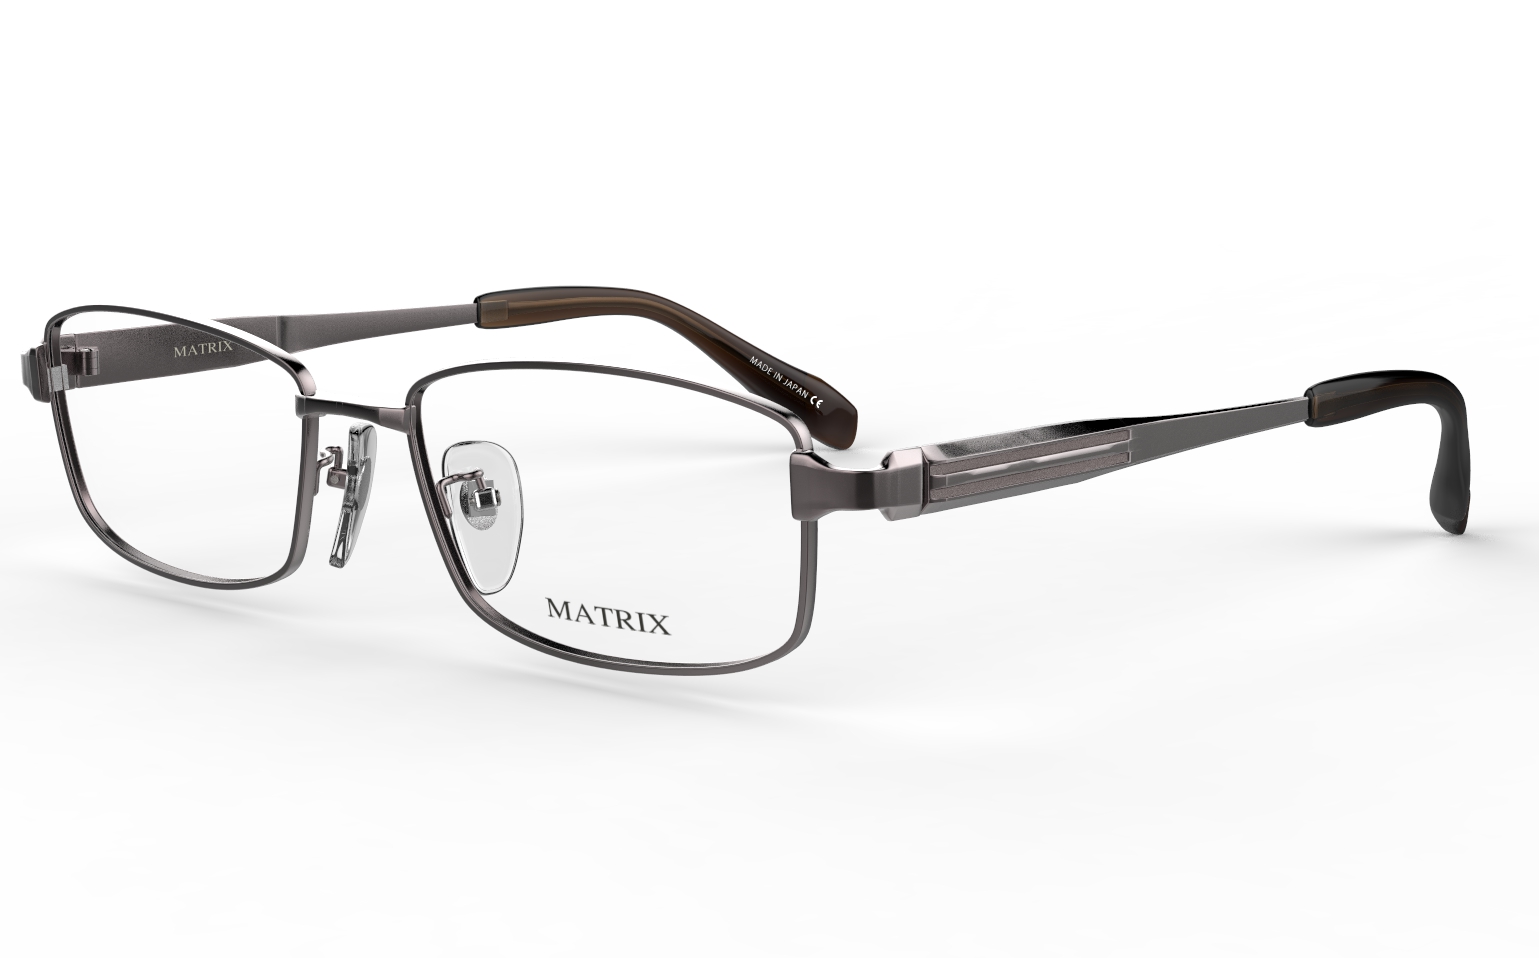 オリエント眼鏡のブログ: 鯖江産のメガネ 新型マトリックス オリエント眼鏡